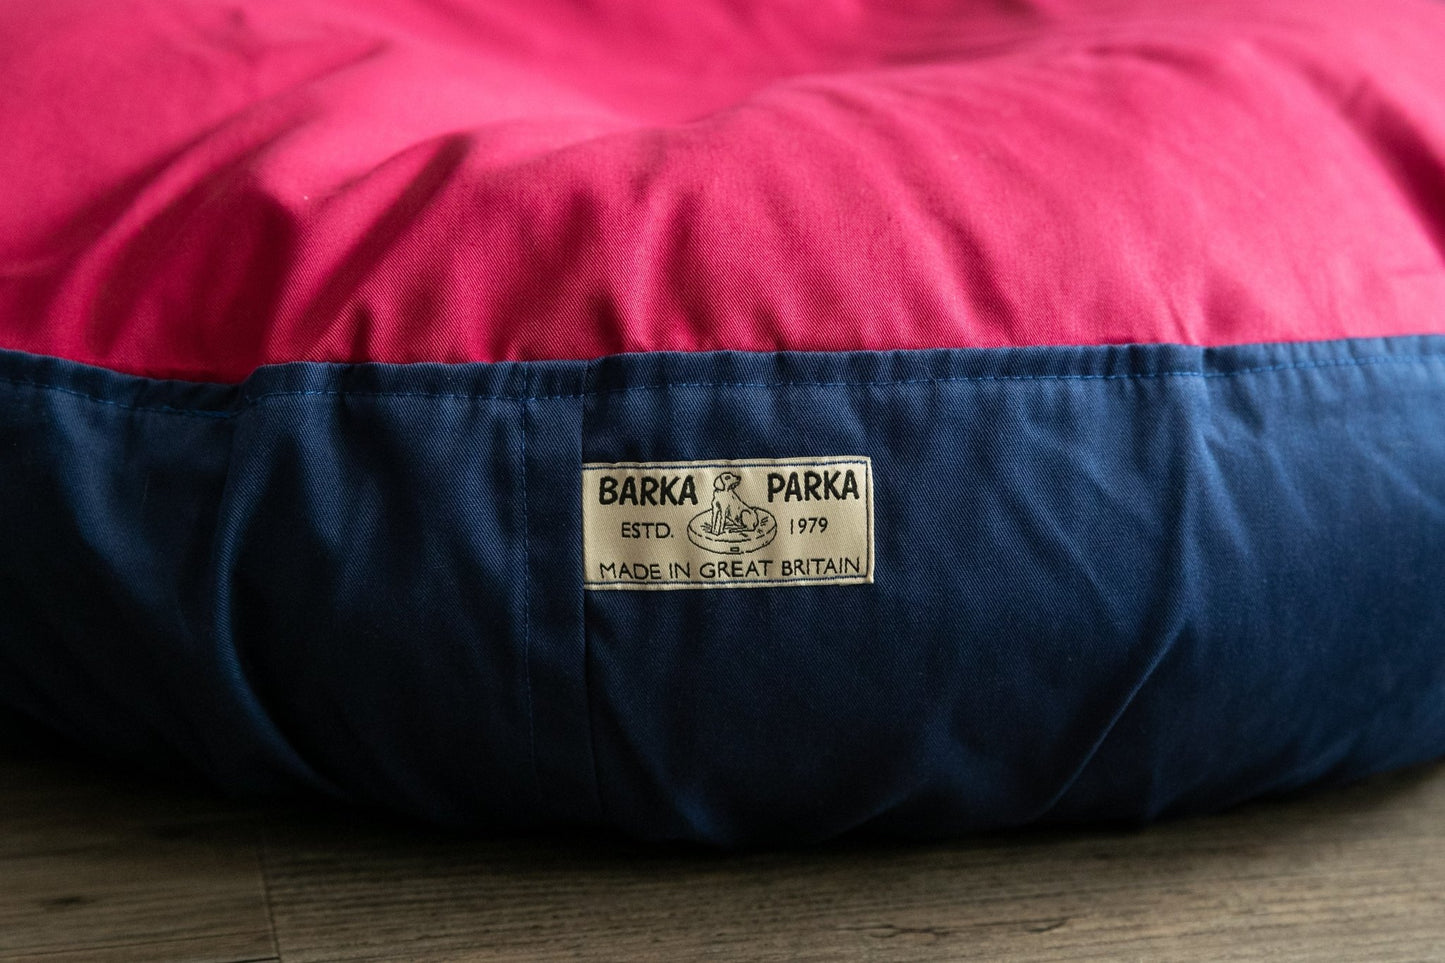 Barka Parka Dog Bed - Burgundy and navy - Barka Parka Dog Beds